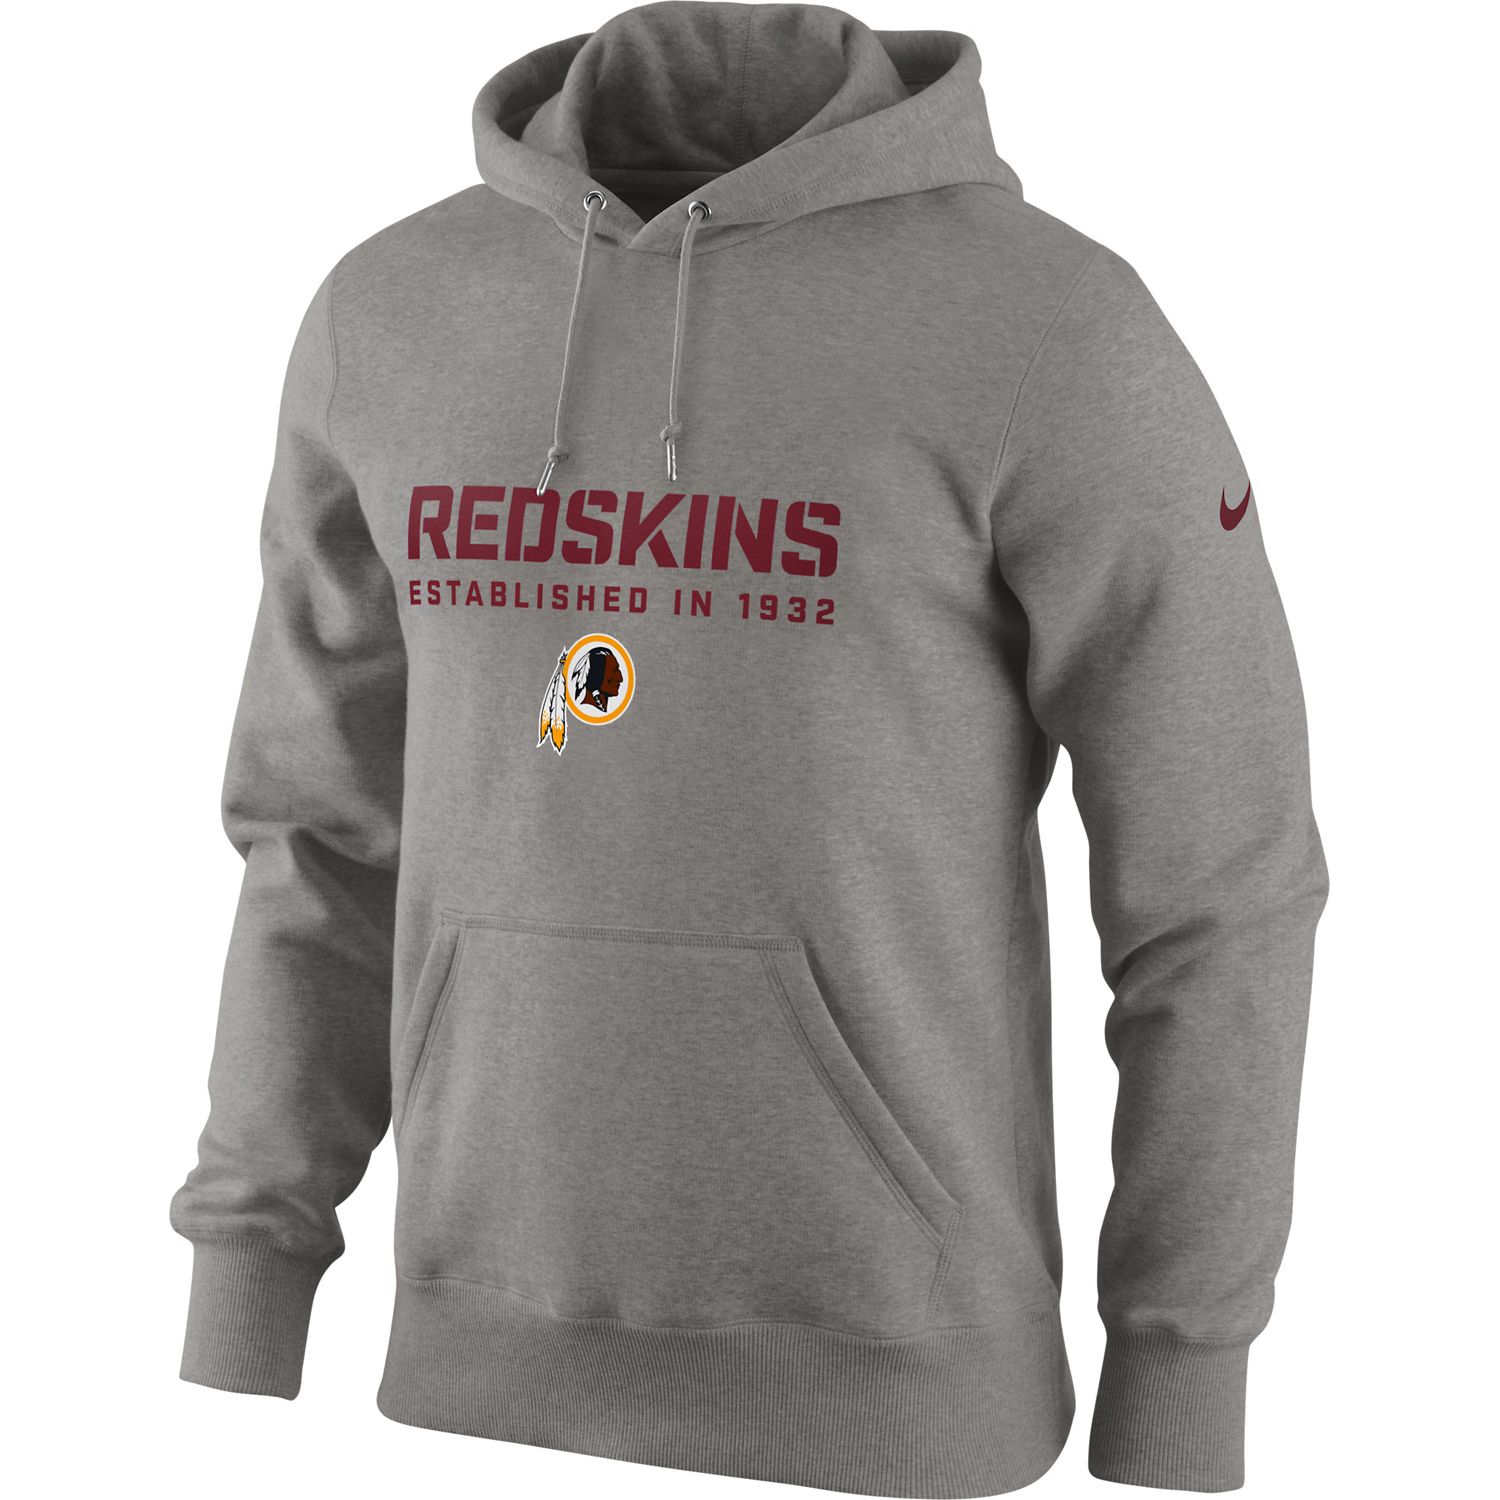 redskins hoodie for men